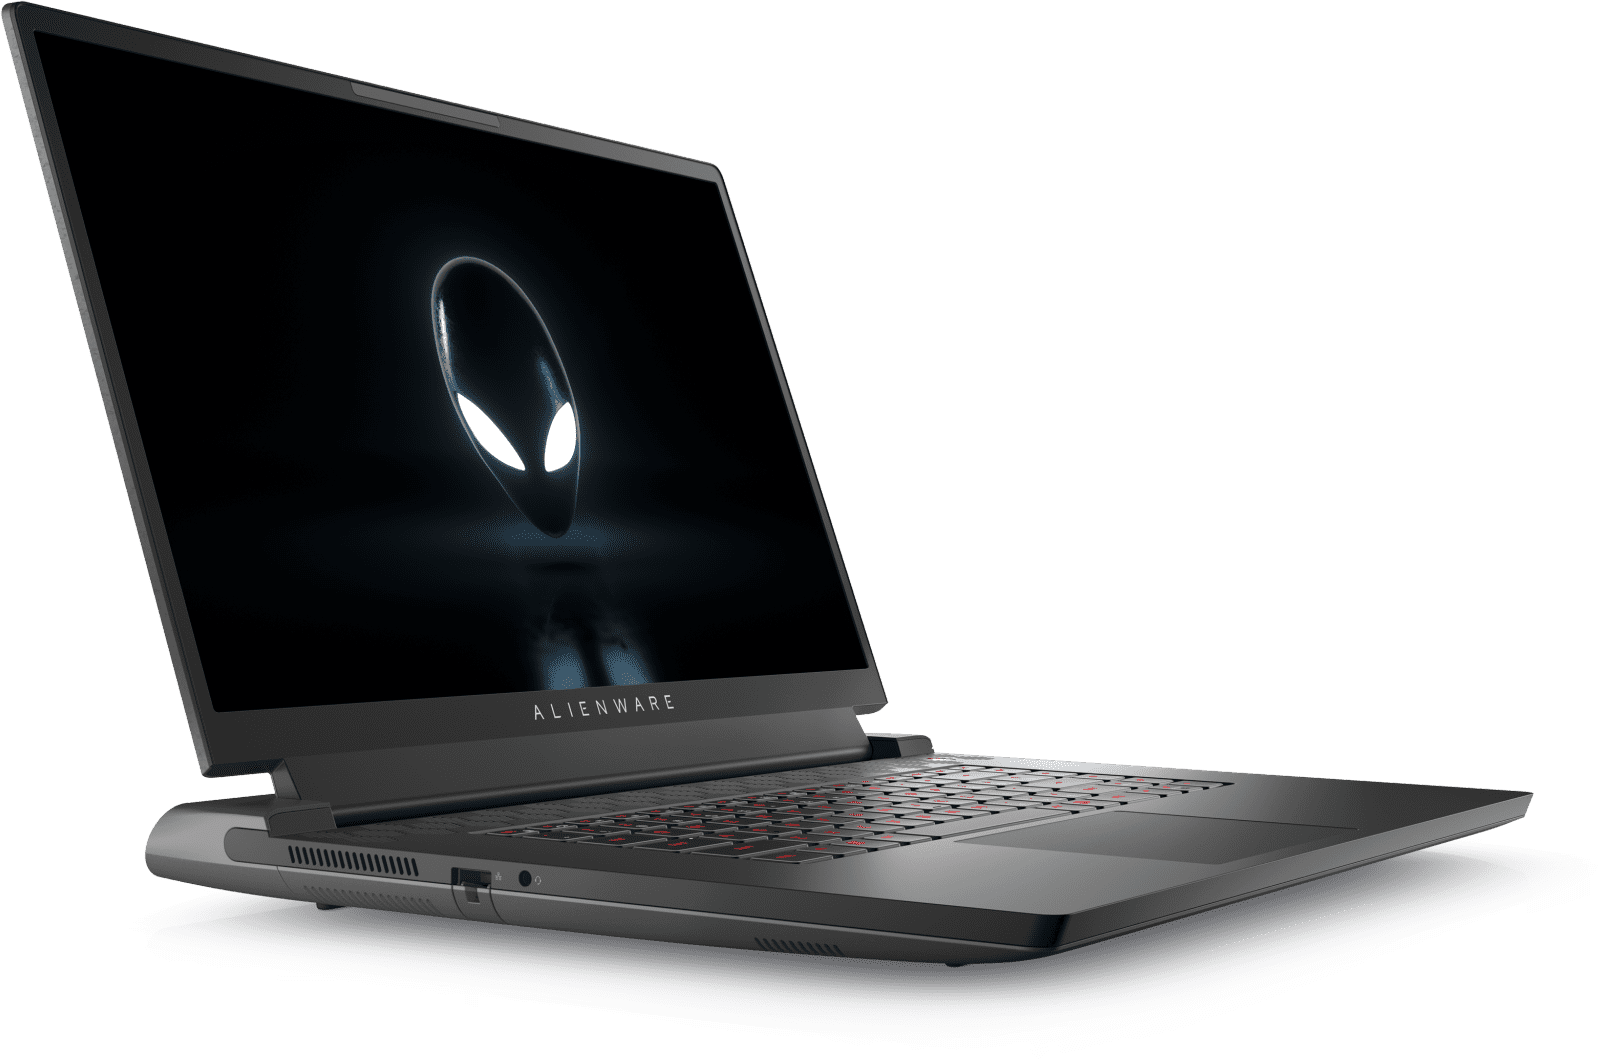 L'écran de 480 Hz fait ses débuts avec les nouveaux laptops haut de gamme d'Alienware !